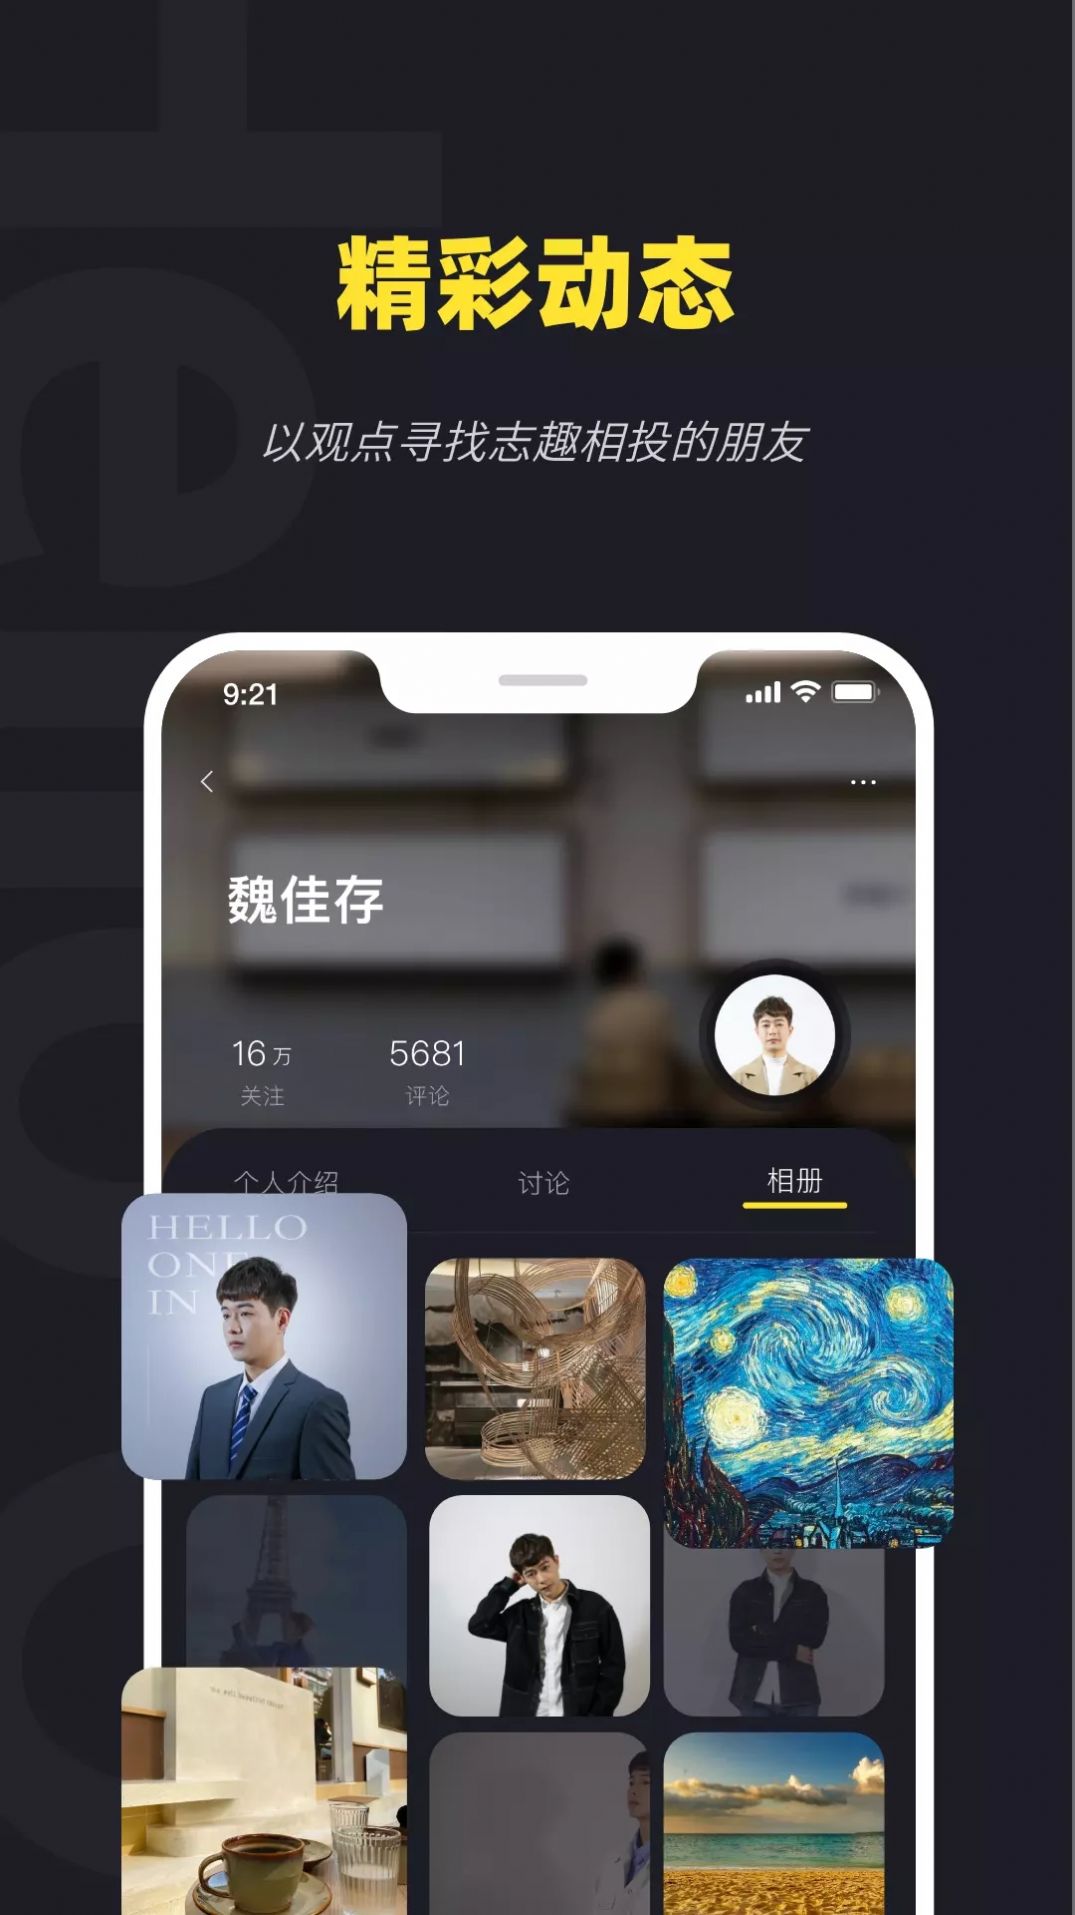 火罗玩影电影社交官方app下载图片1